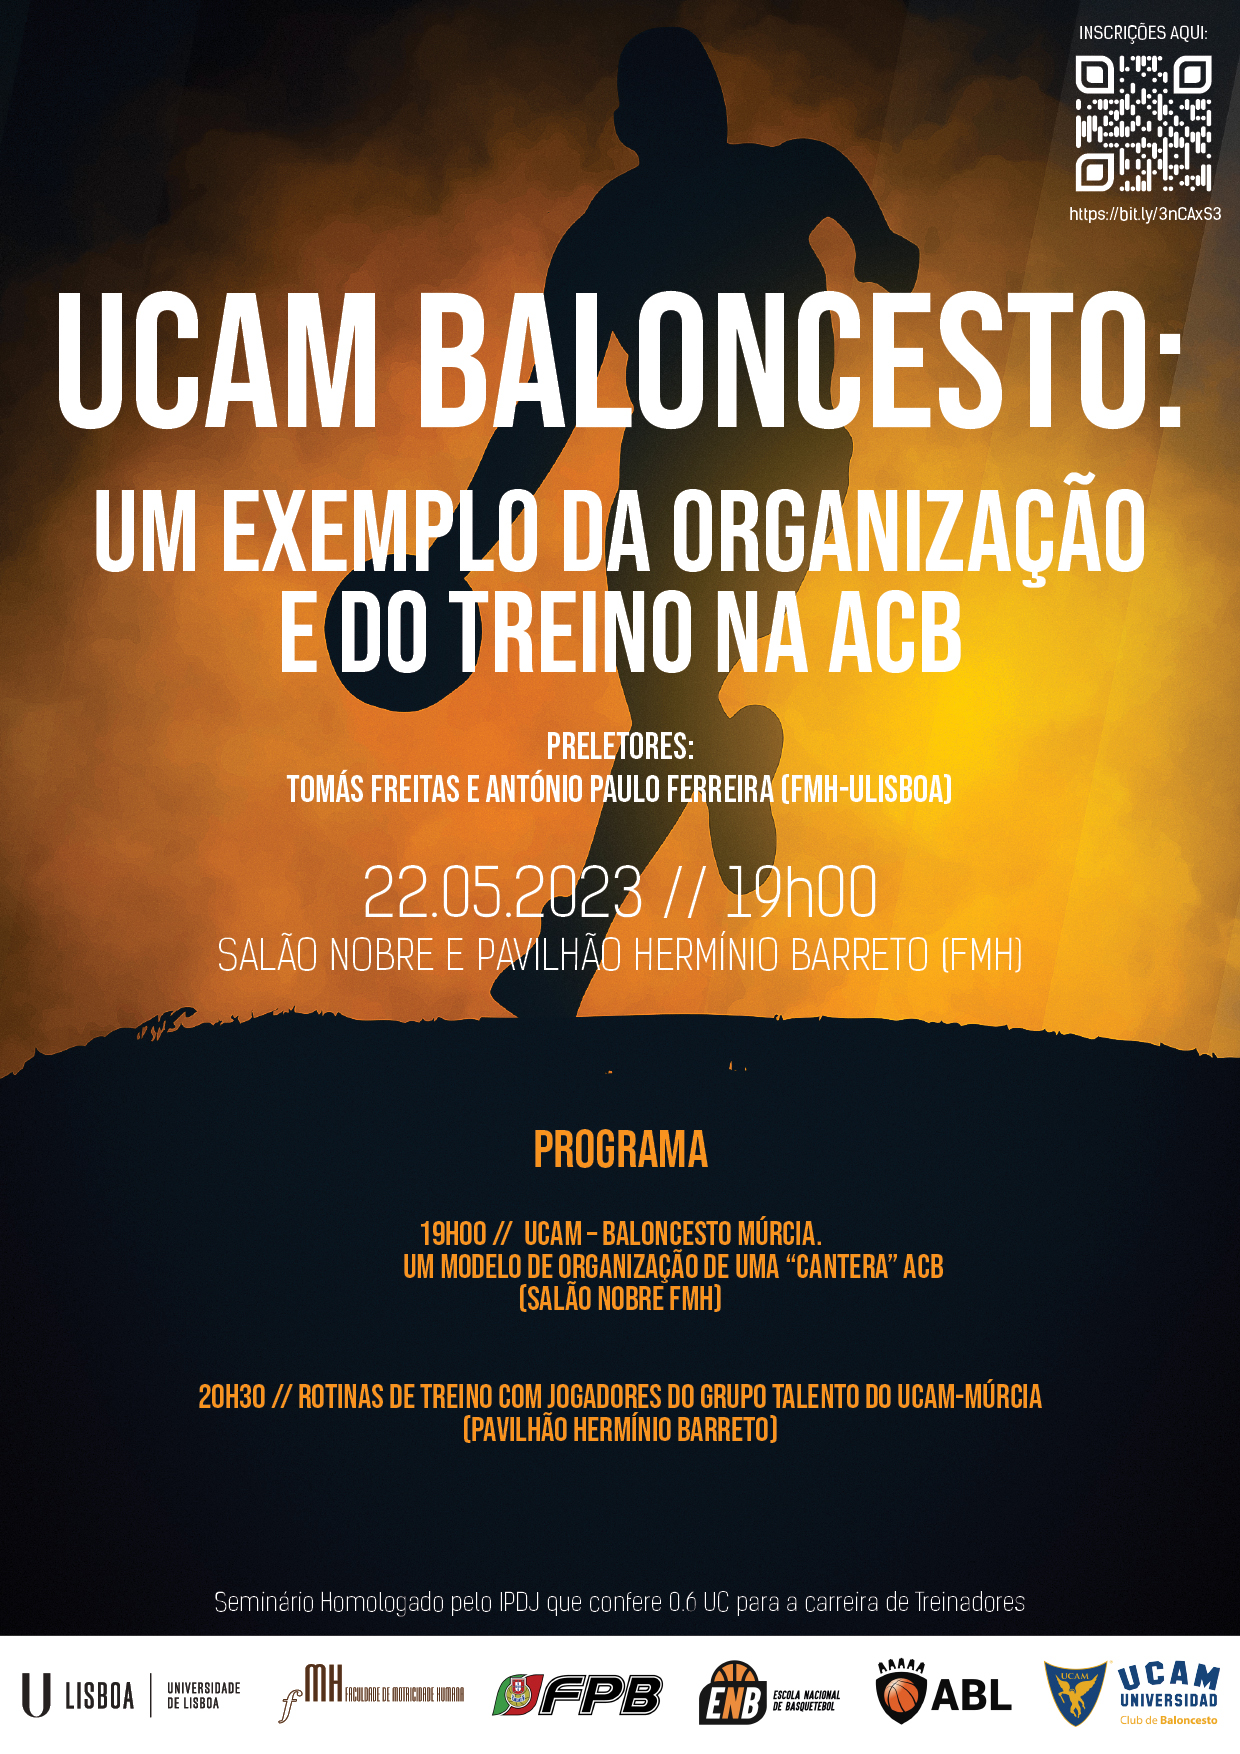 Workshop - UCAM Baloncesto: um exemplo da organização e do treino na ABC